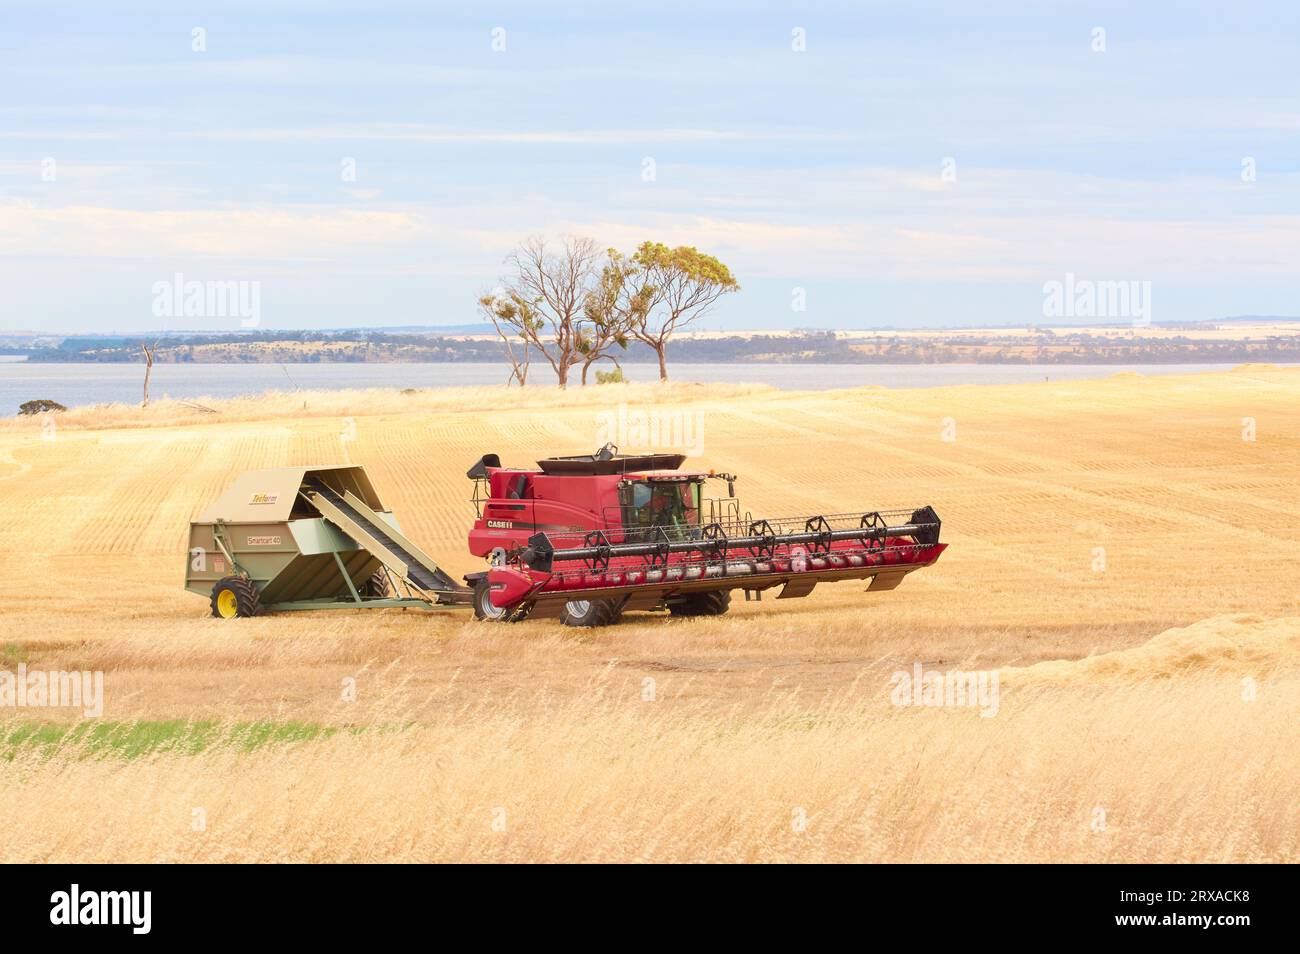 Una mietitrebbiatrice in funzione in un campo di grano nella località di Nippering con il lago Dumbleyung sullo sfondo, regione di Wheatbelt, Australia Occidentale. Foto Stock